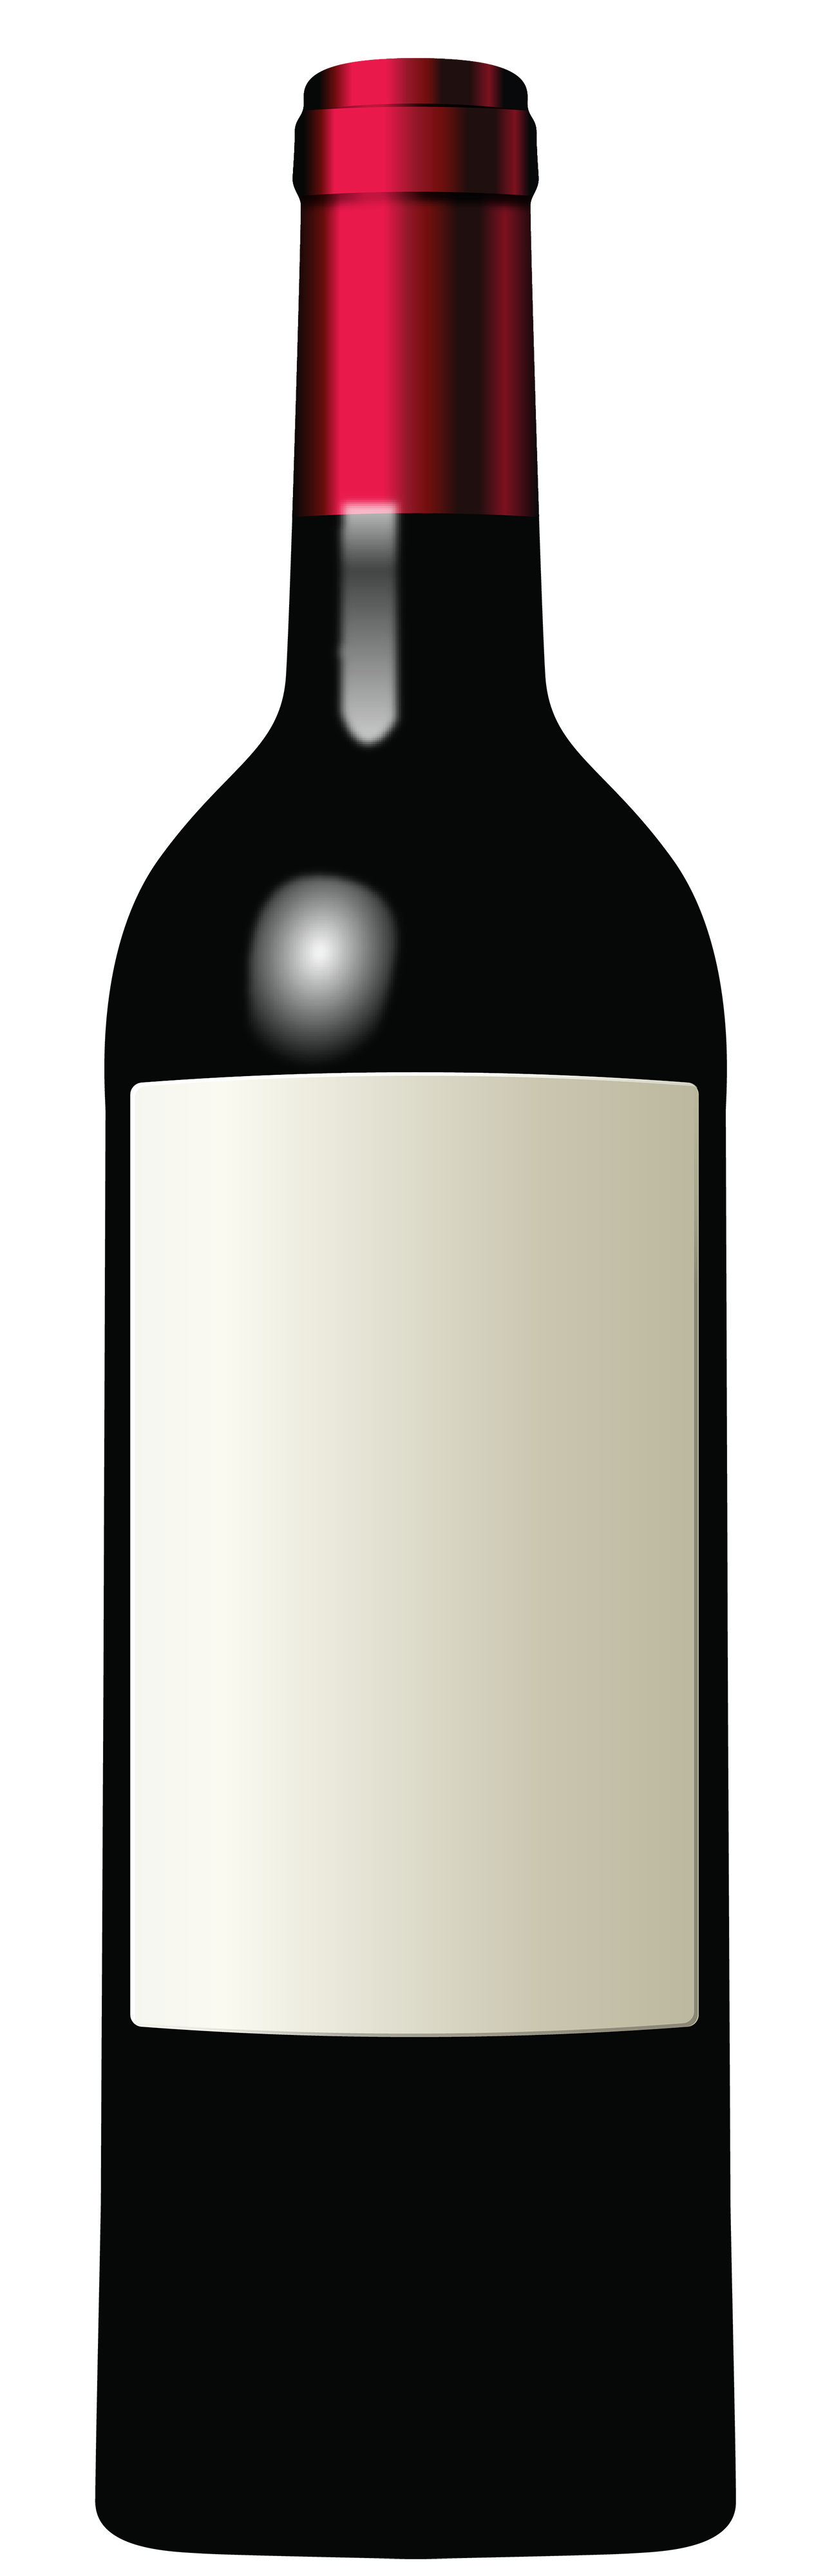 Bottle Png 7 PNG Image